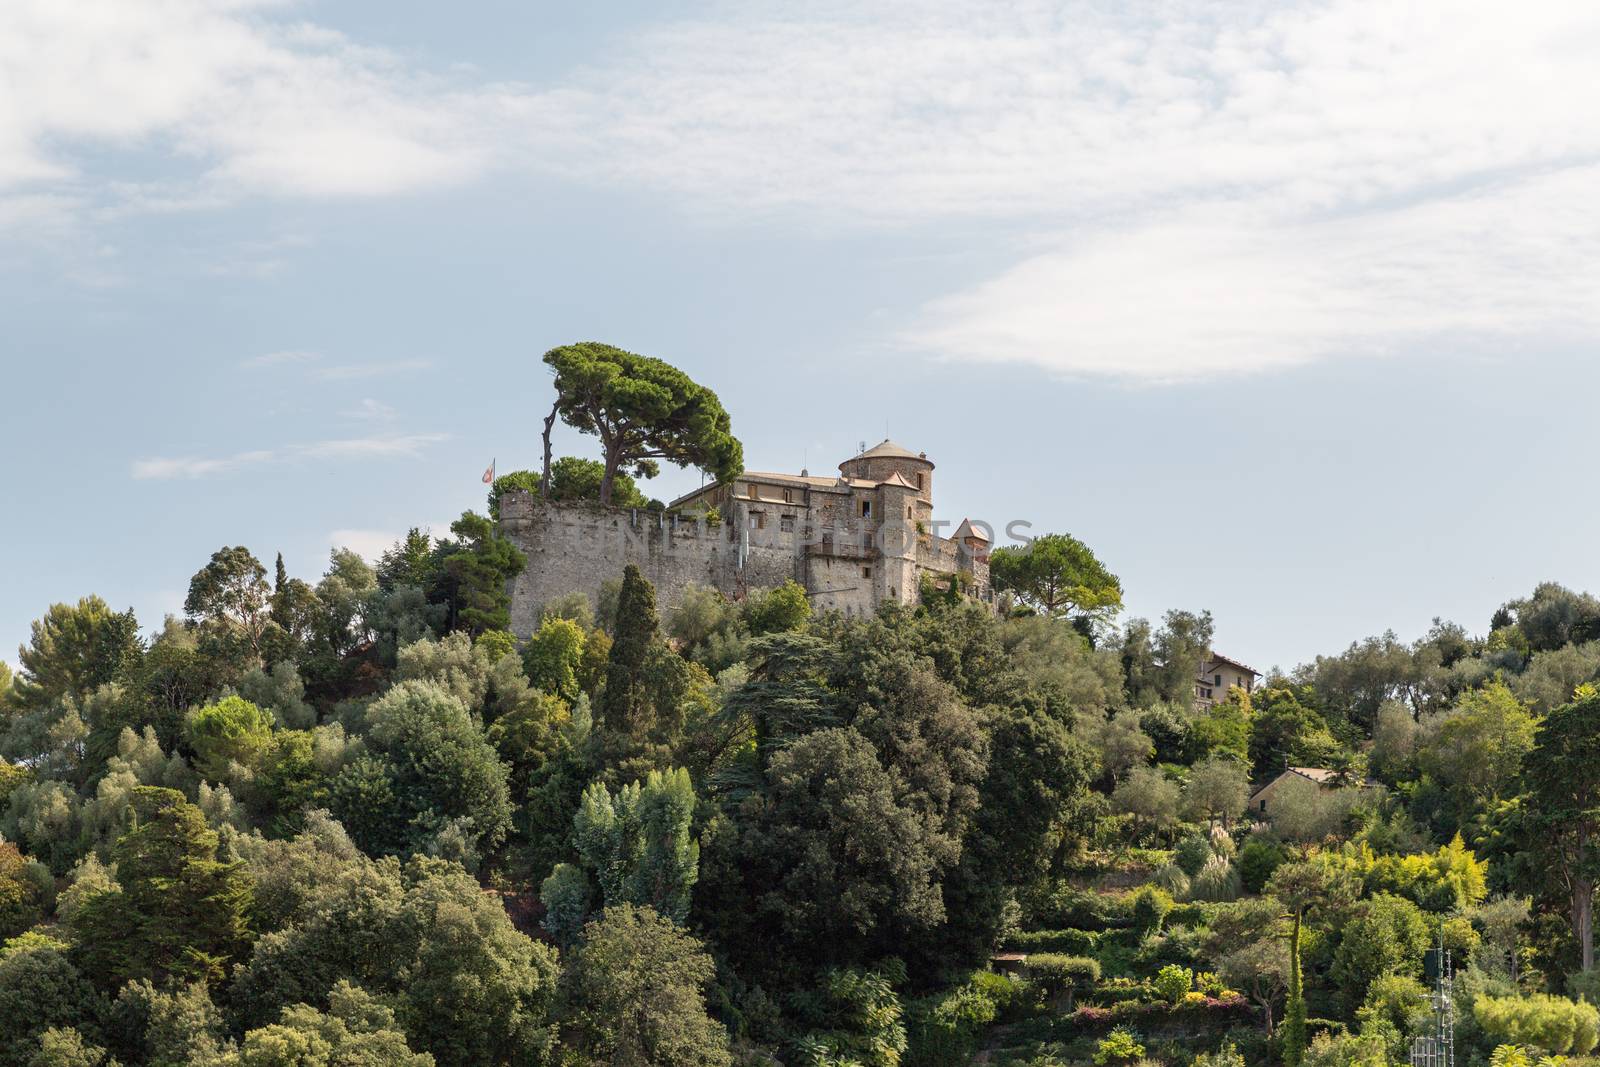 Castello Brown is the Castle above Portofino by chrisukphoto